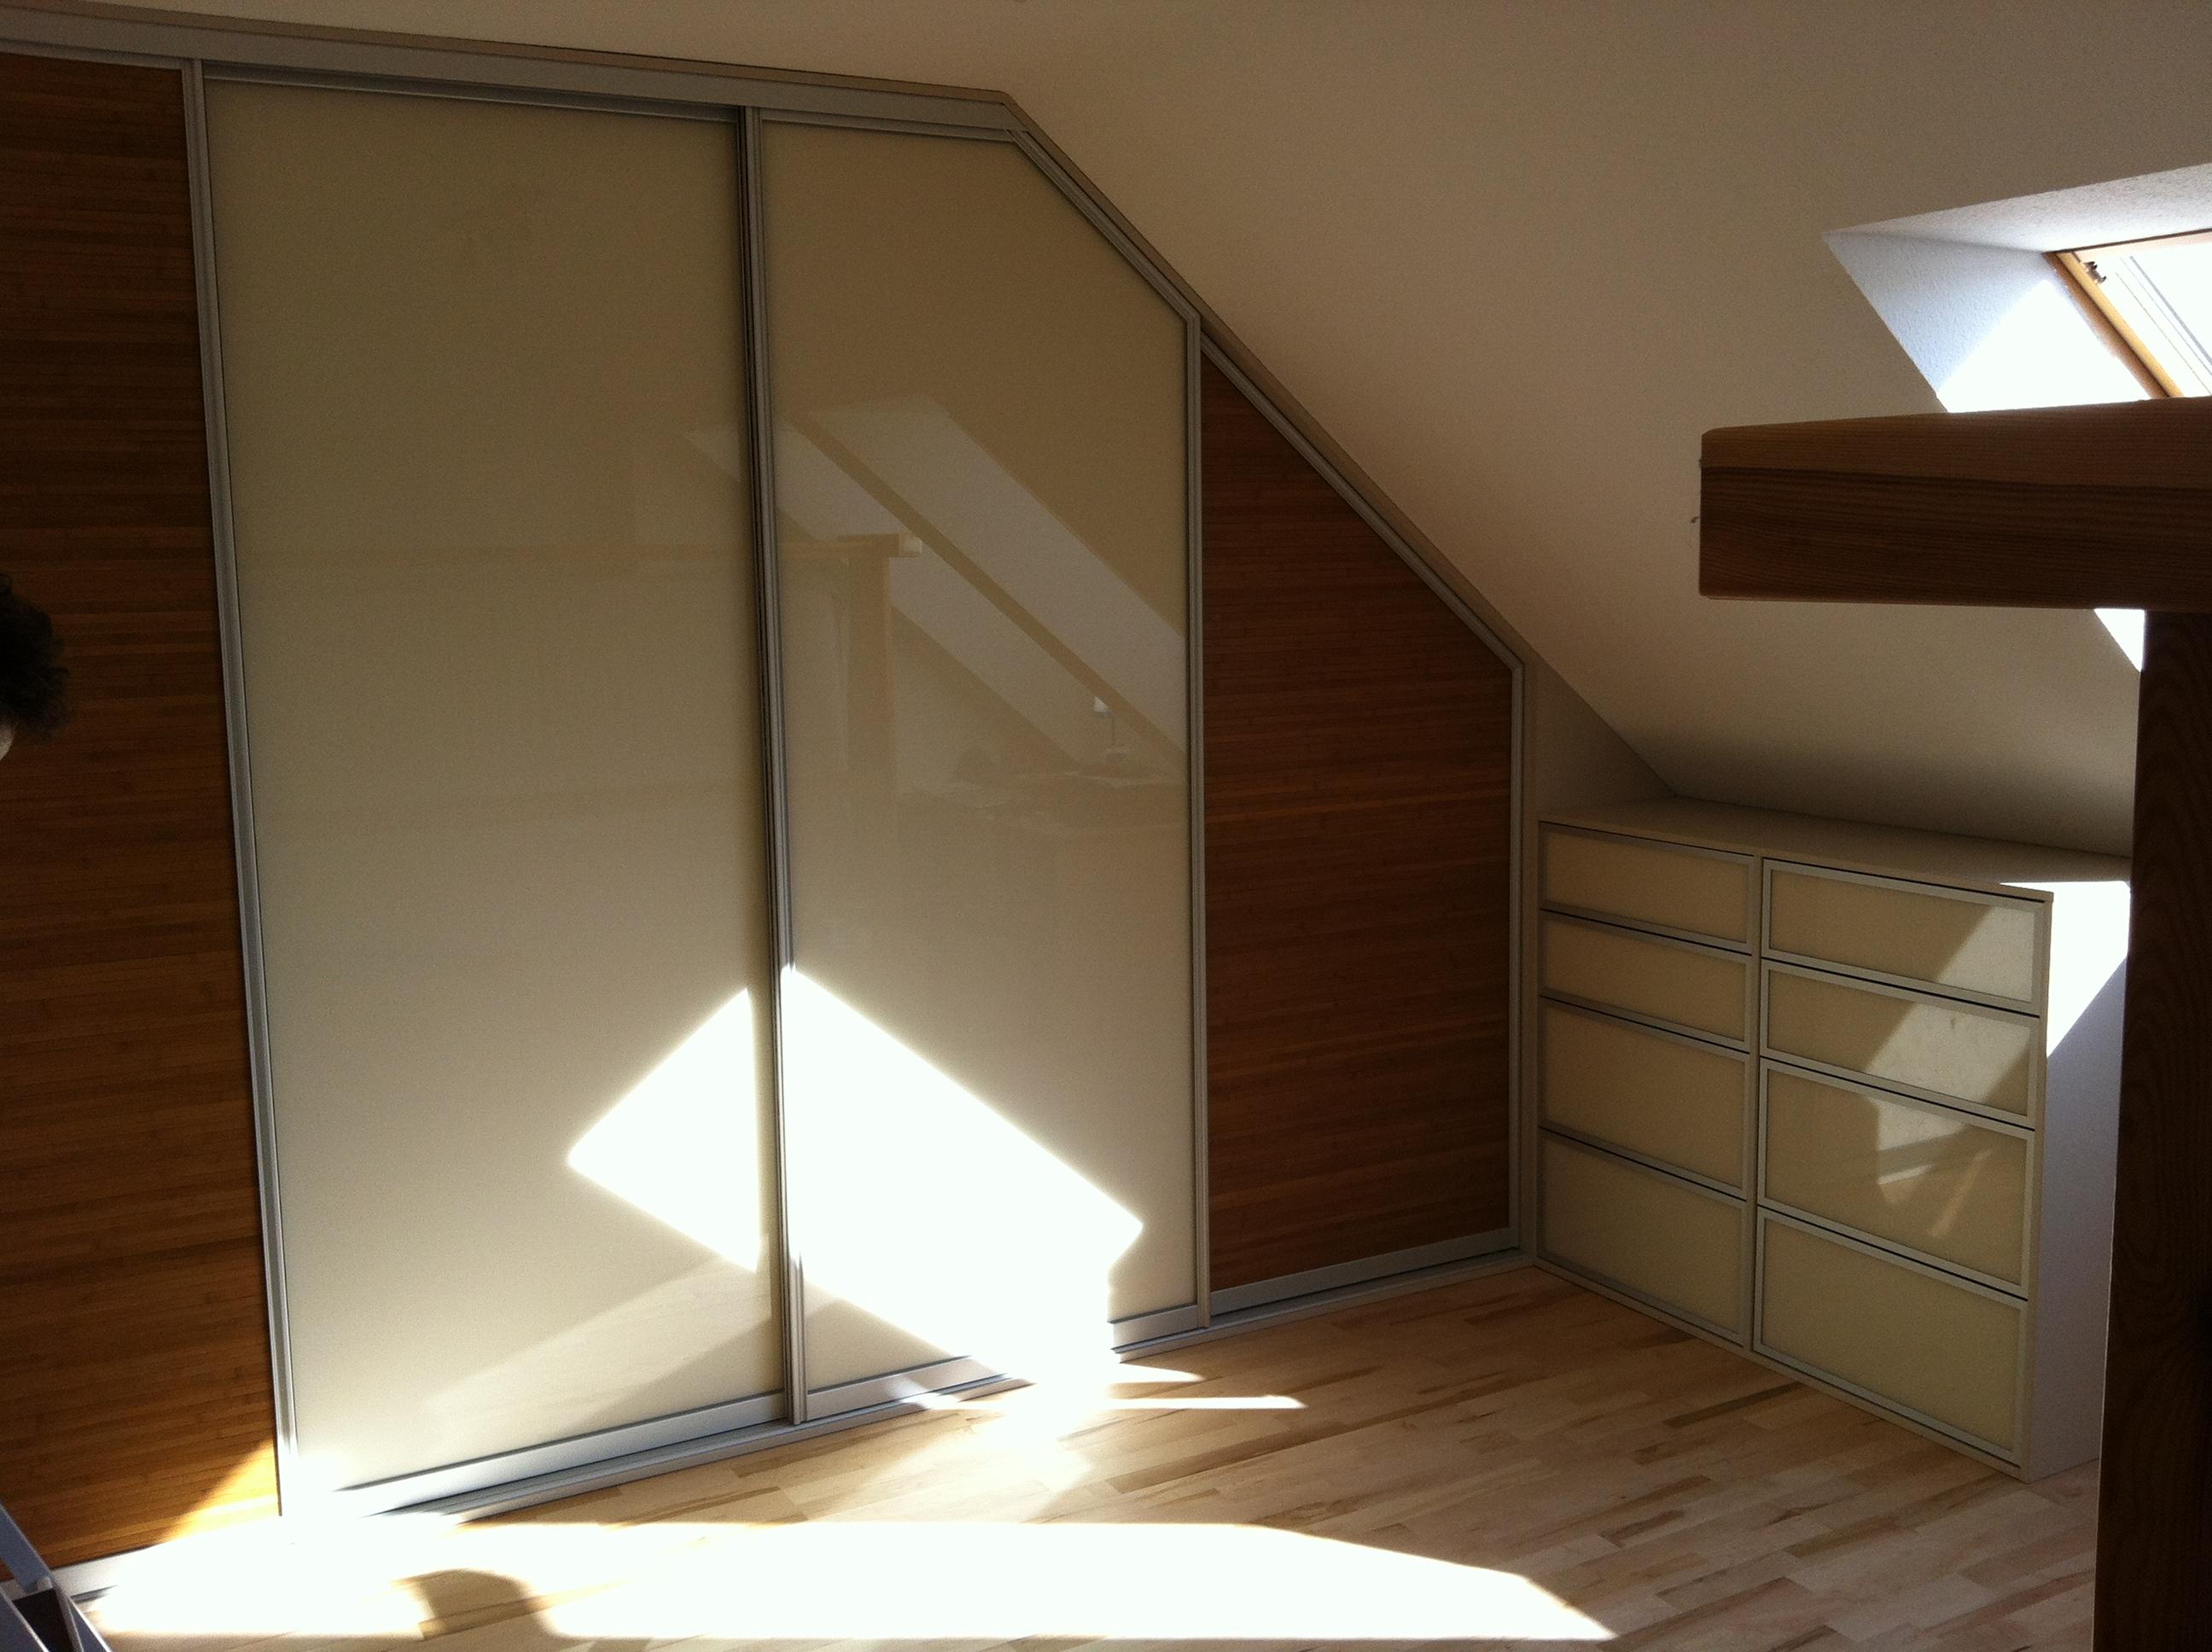 Einbauschrank in Dachschräge mit Schiebetüren und Schubladen #bambus #einbauschrank #schiebetür ©Schrankprojekt GmbH